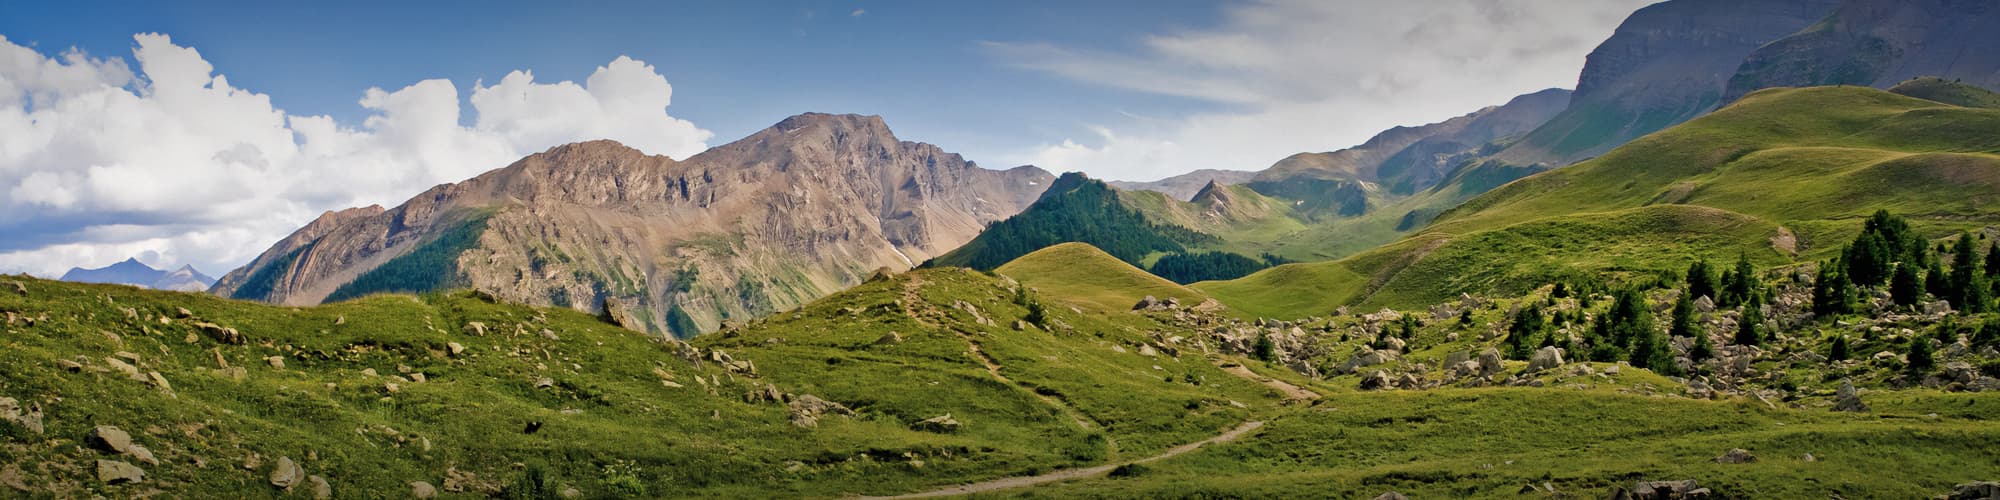 Trek Alpes du Sud © Uolir / Adobe Stock